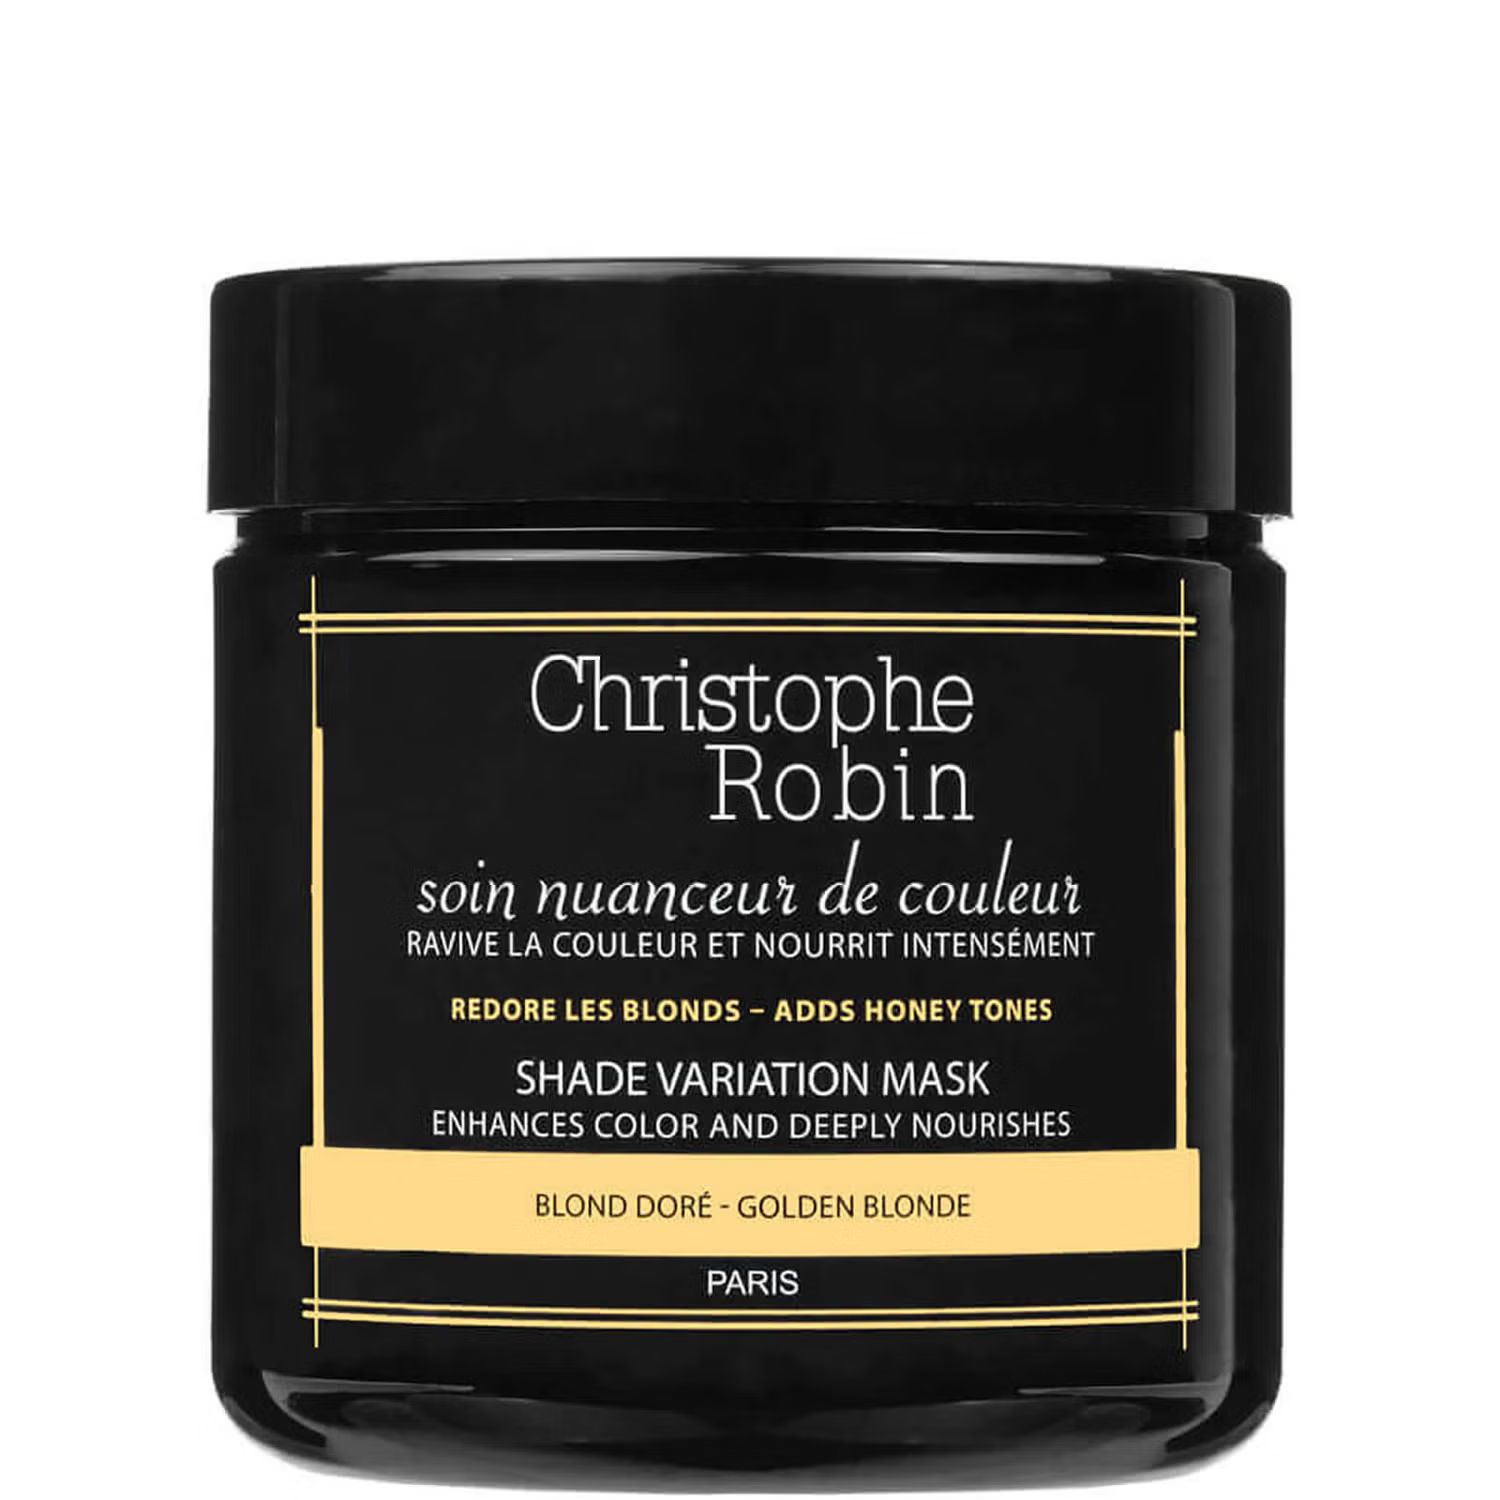 Christophe Robin Shade Variation Mask - Golden Blonde 8.33 fl. oz. | Dermstore (US)